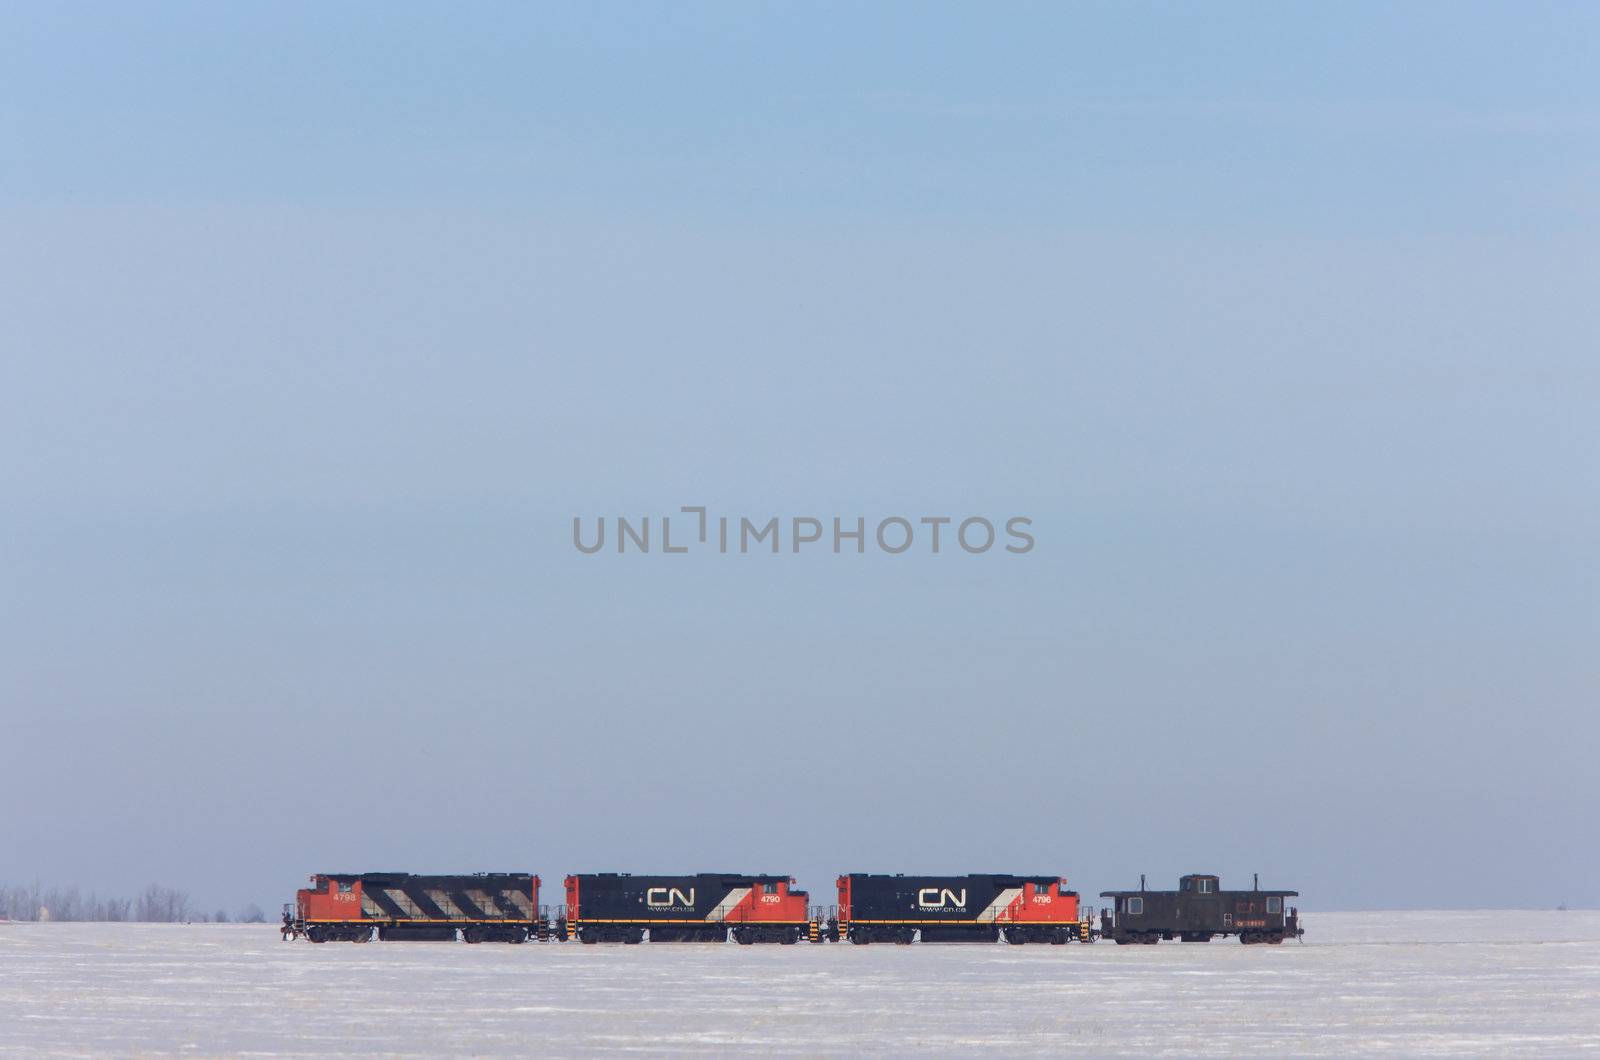 Train in Winter Canada